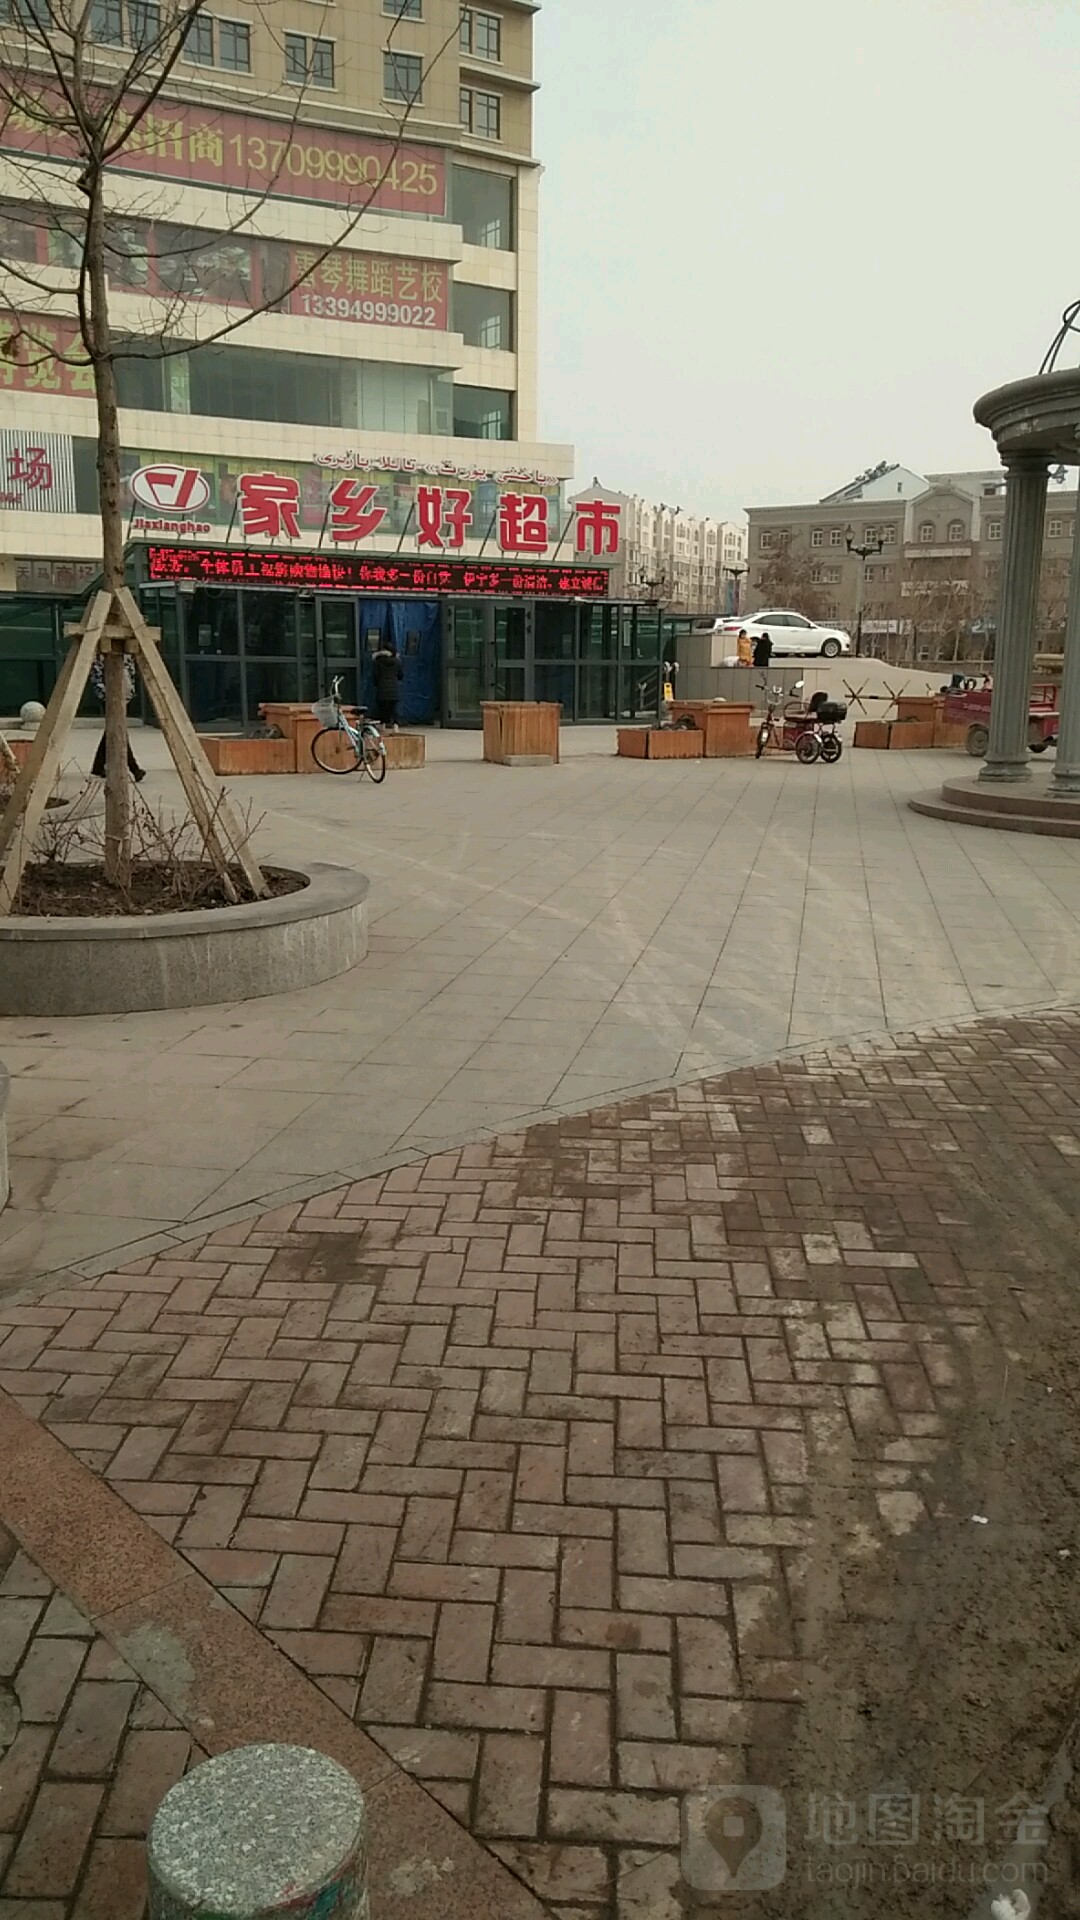 新疆维吾尔自治区伊犁哈萨克自治州伊宁市解放西路金融大厦玖便利超市